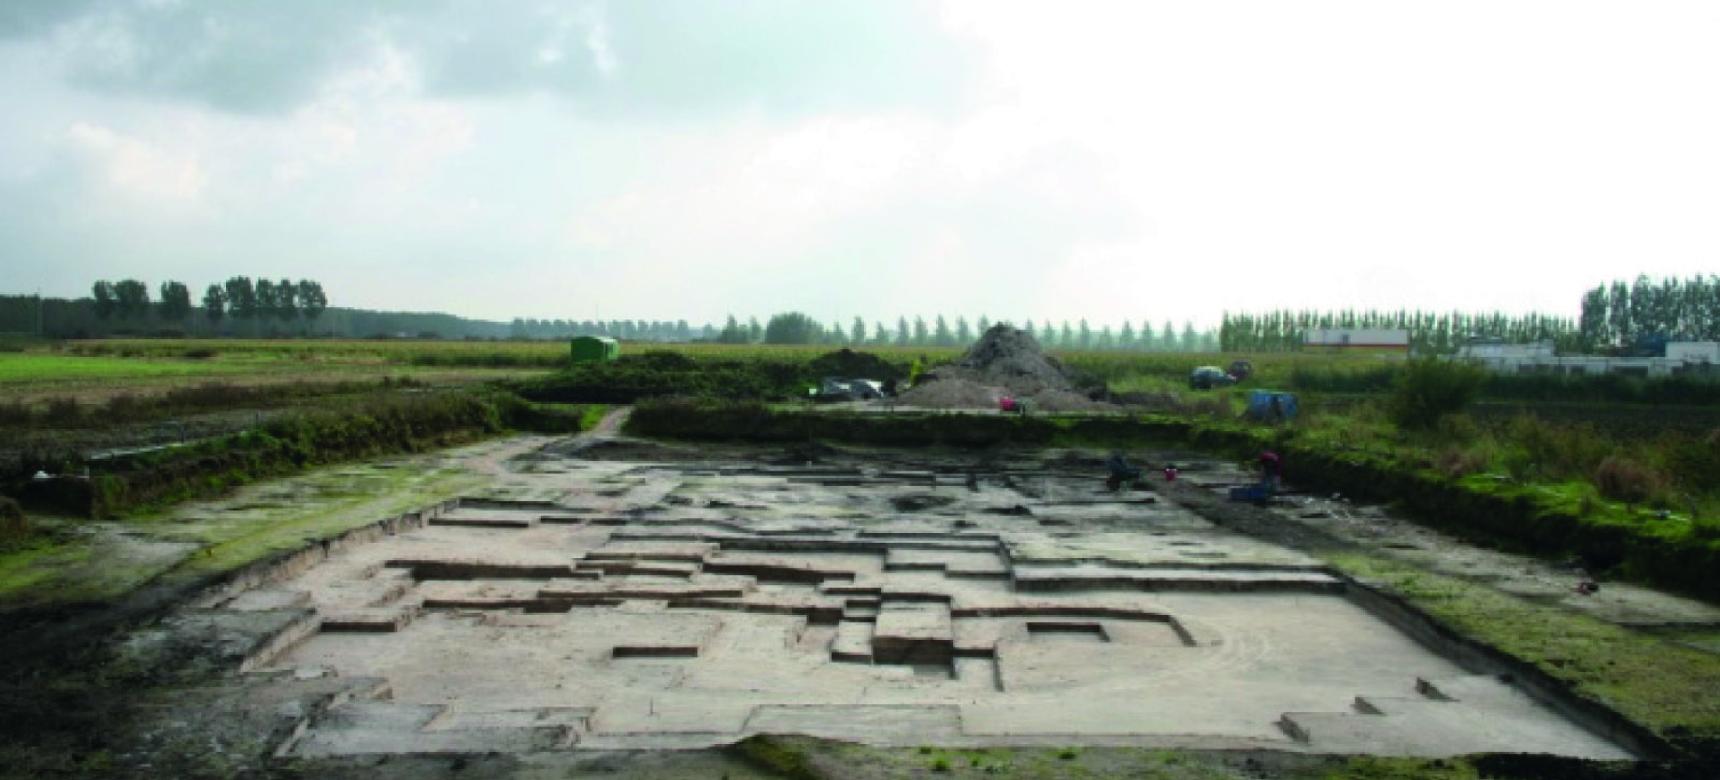 Opgraving te Aven Ackers in 2006 bij het prehistorisch sitecomplex Vrasenepolder en Verrebroekdok